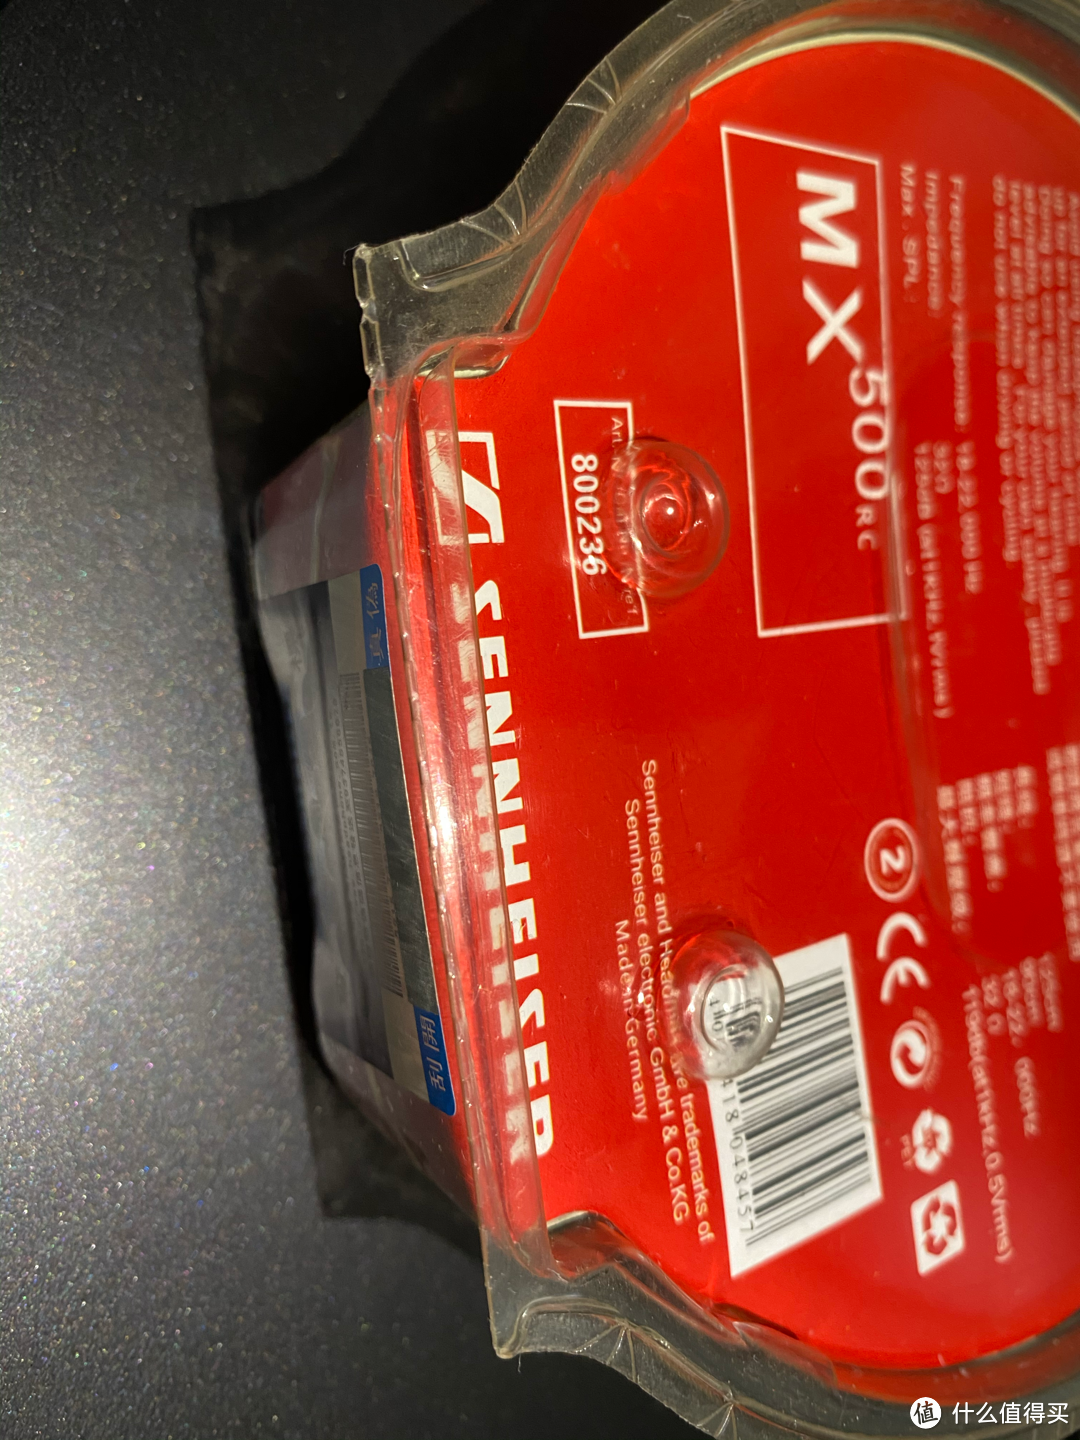 红色MX500耳机:森海塞尔+可口可乐联名限量纪念版